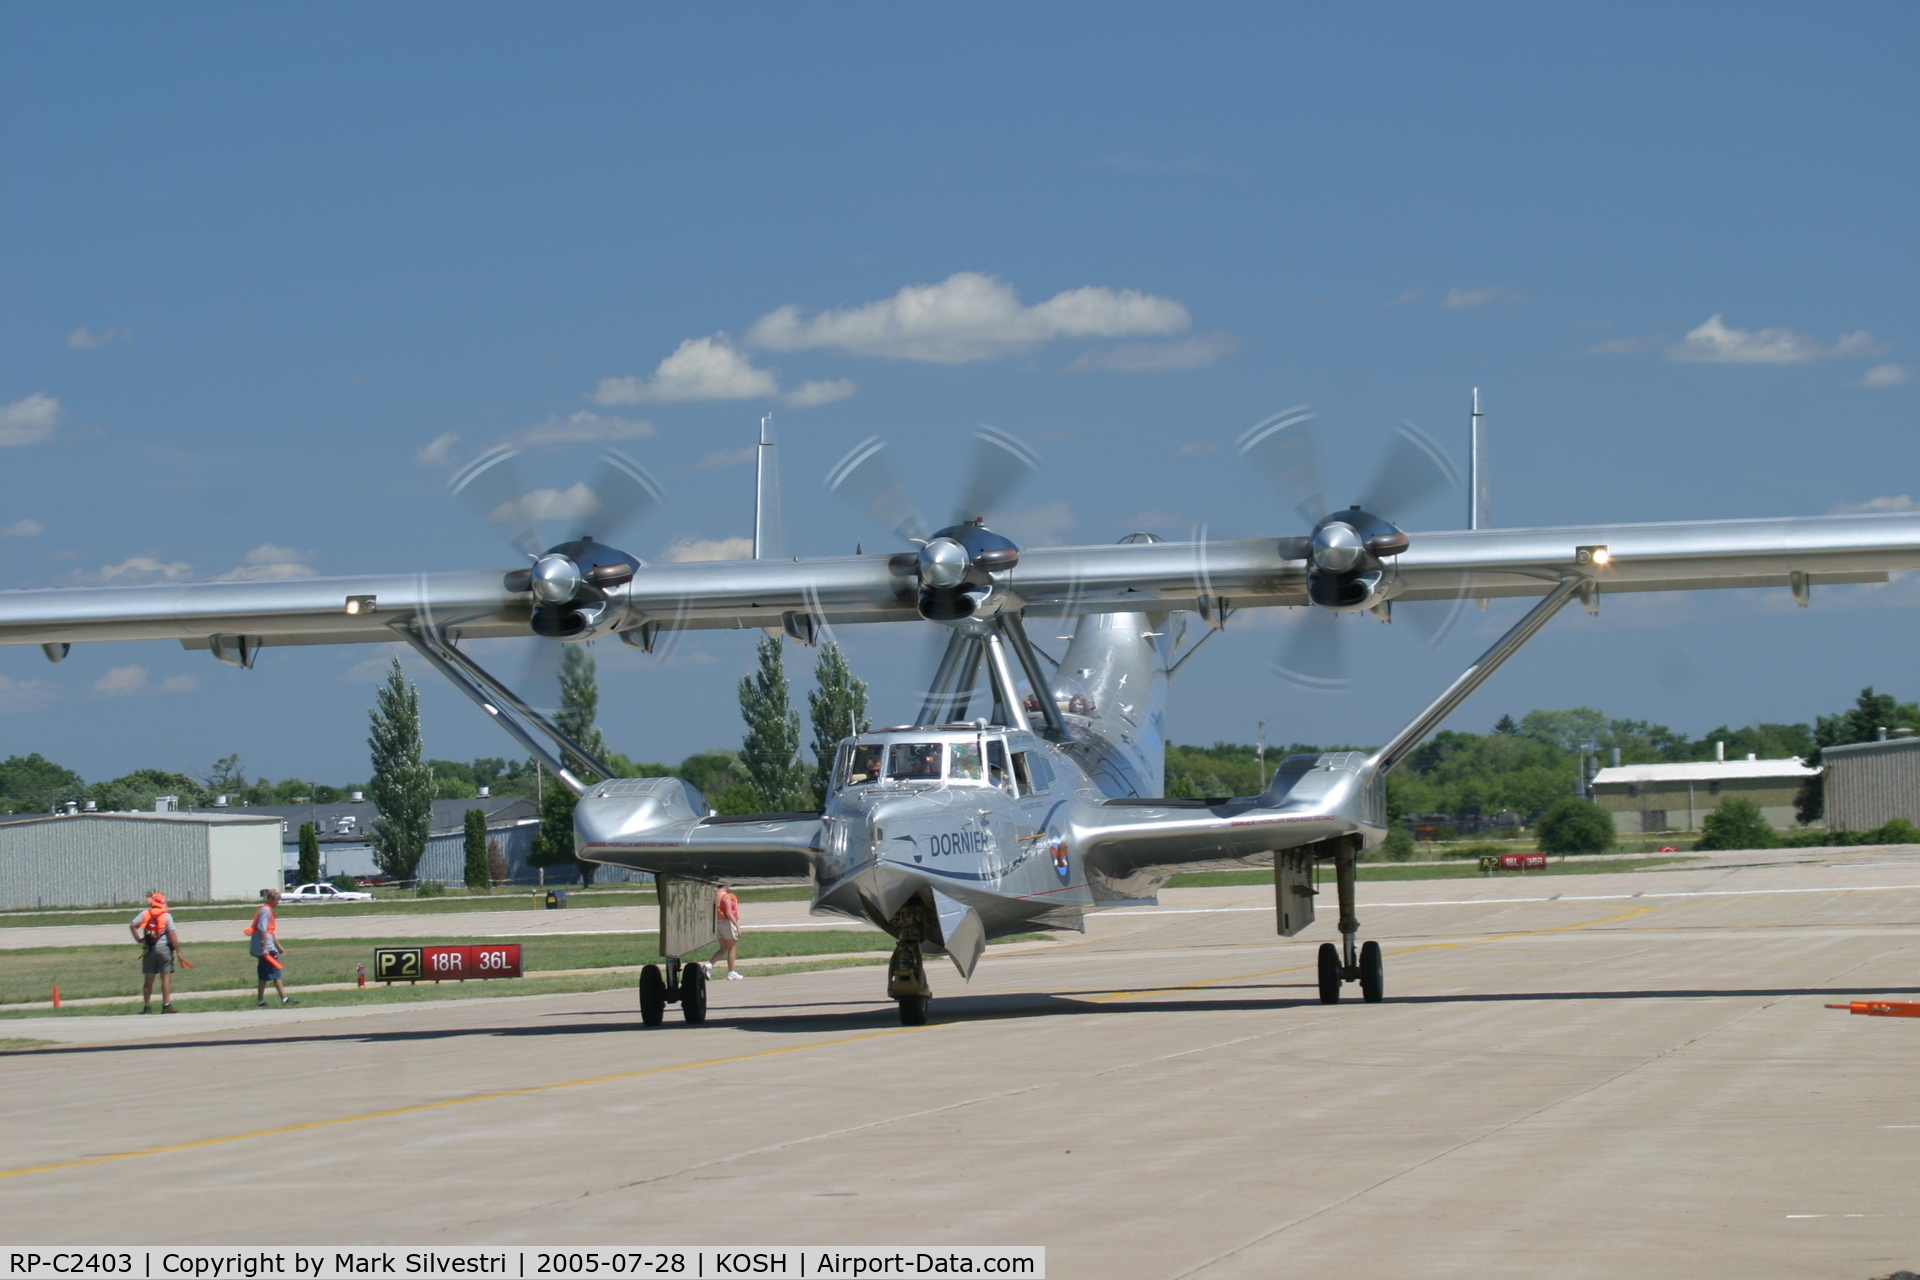 RP-C2403, 2000 Dornier Do-24ATT C/N 5345, Oshkosh 2005